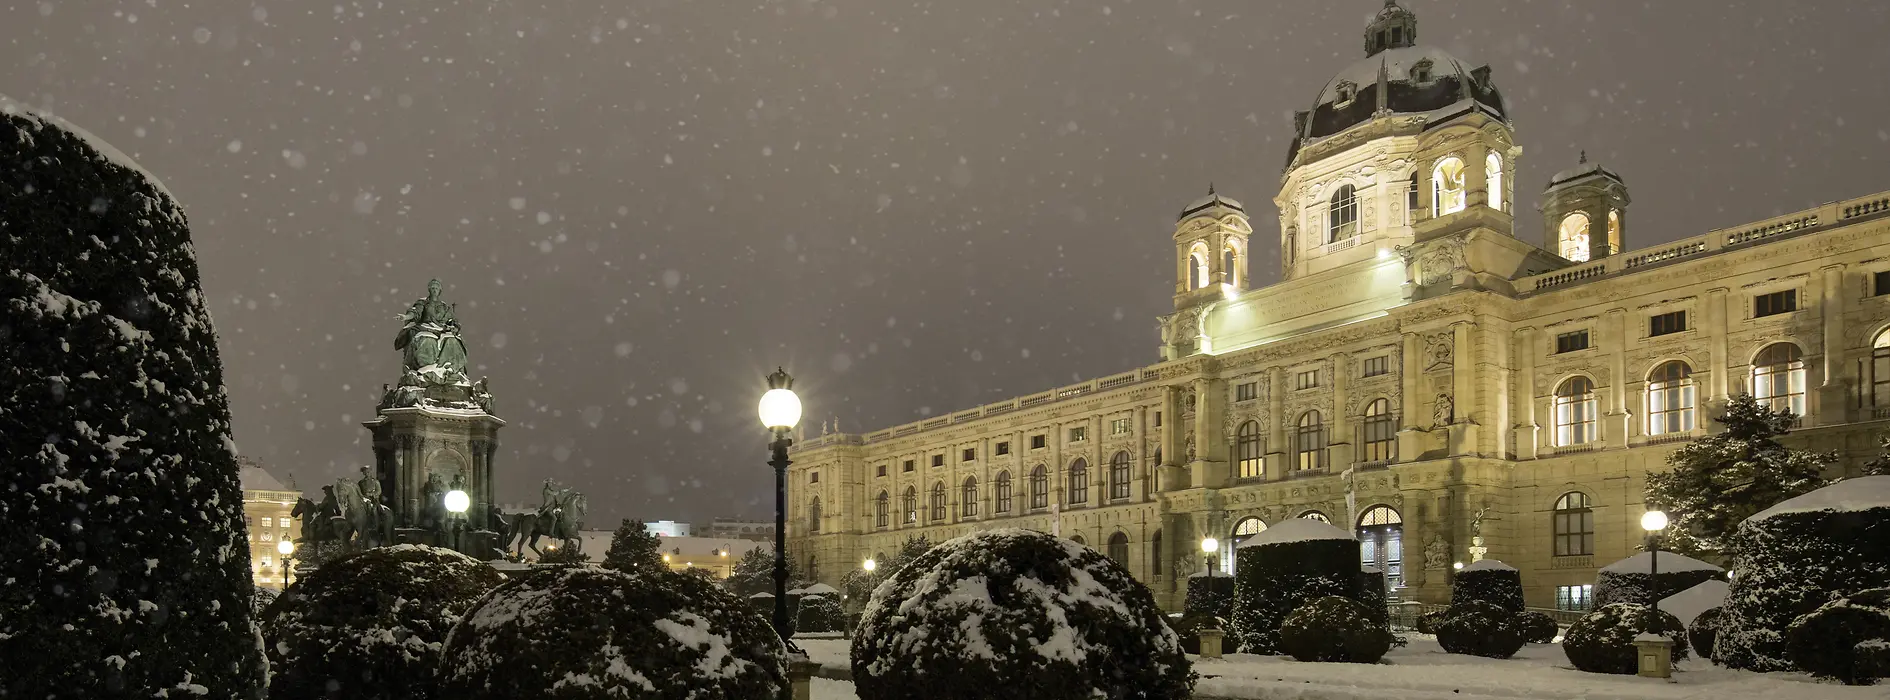 Естественно-исторический музей зимой во время снегопада